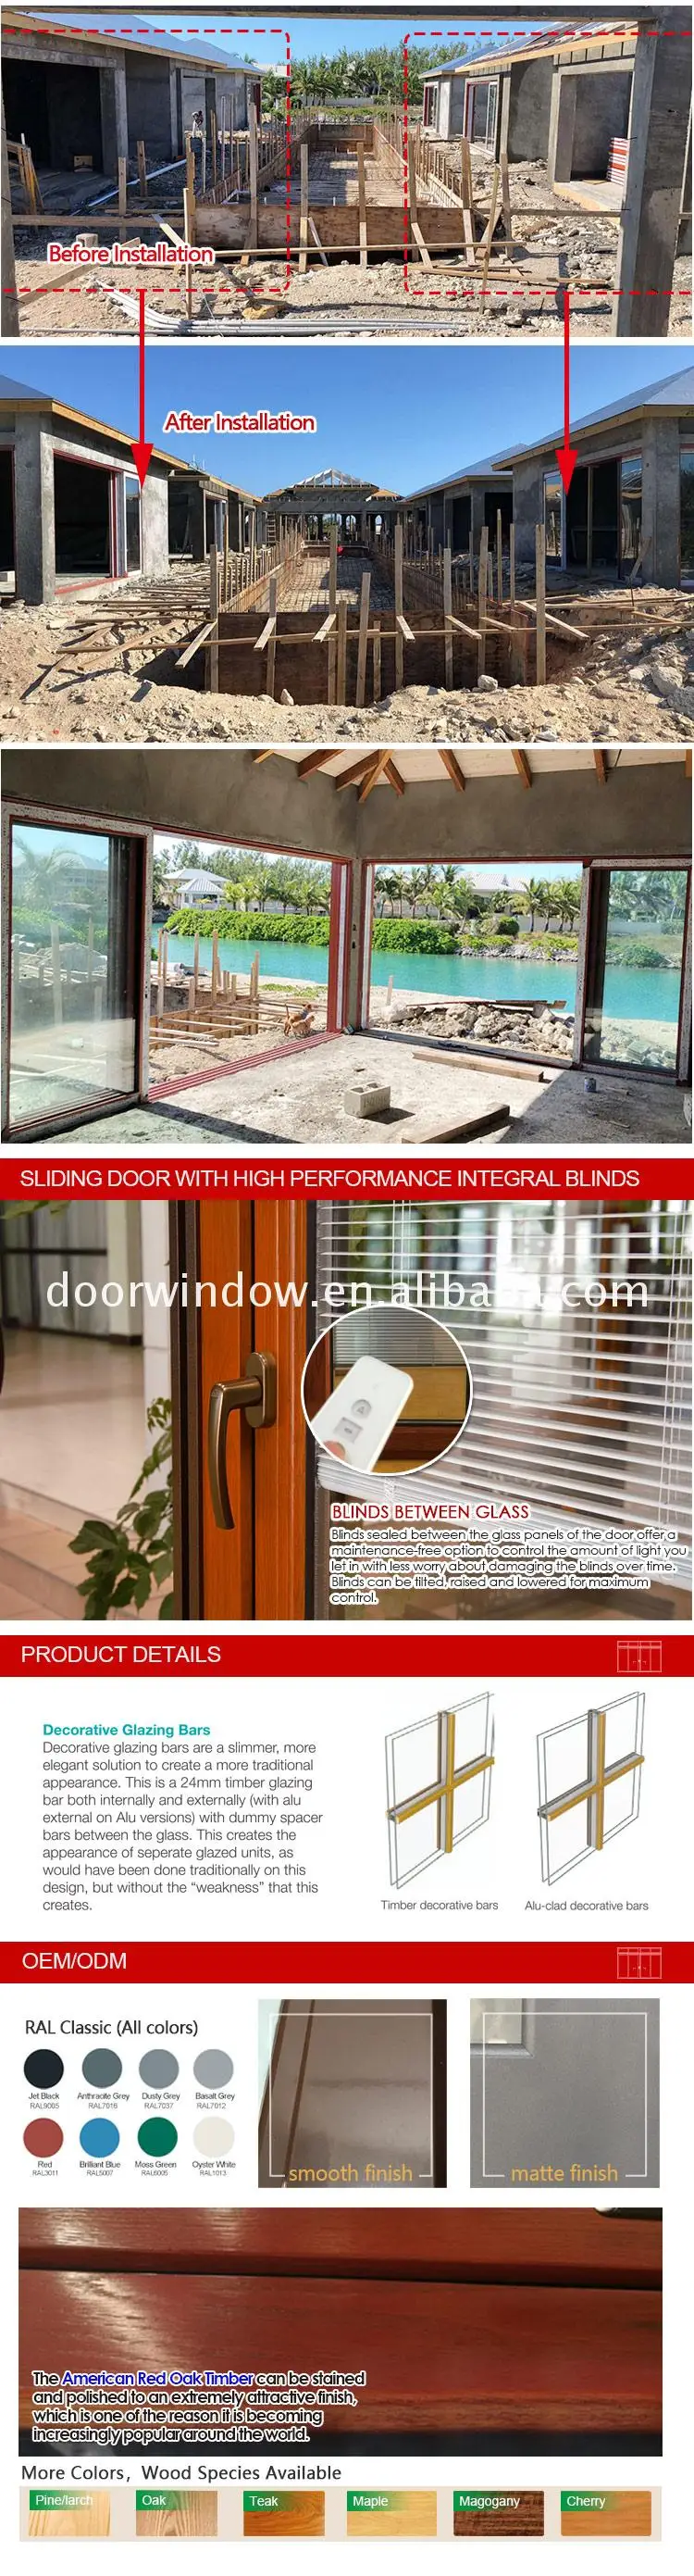 Lowes exterior wood doors kitchen kerala front door designs